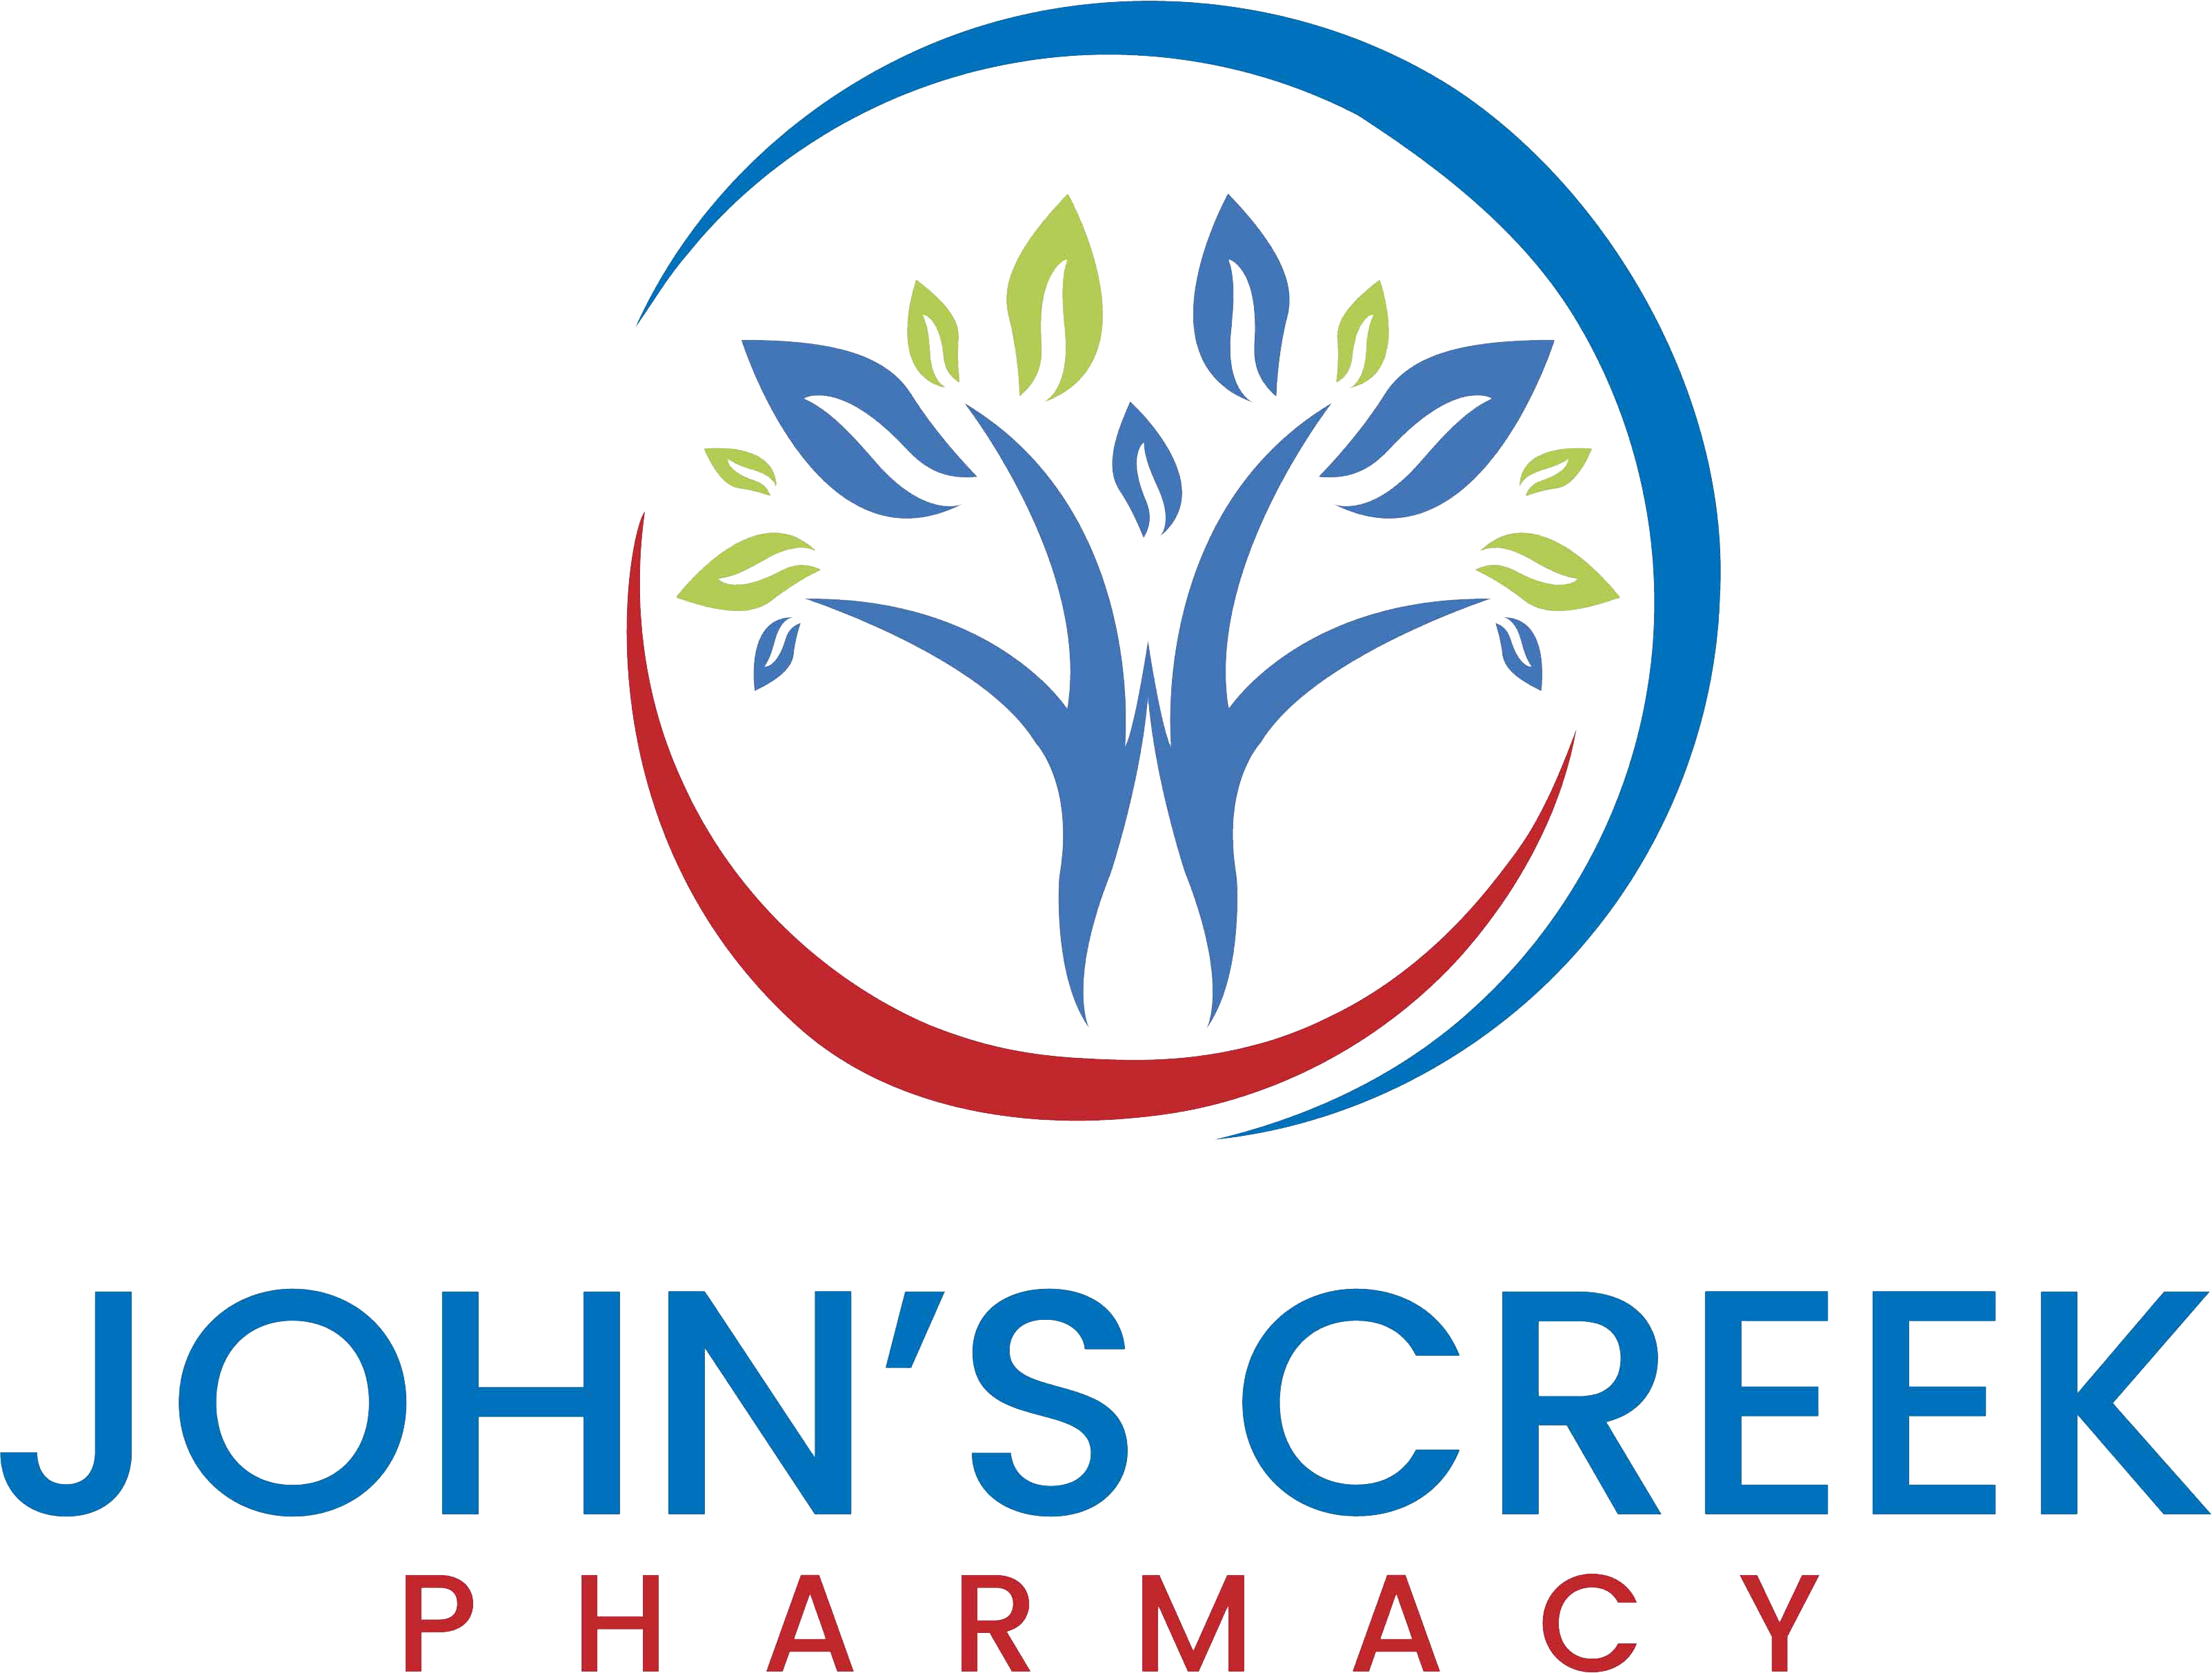 John's Creek Pharmacy